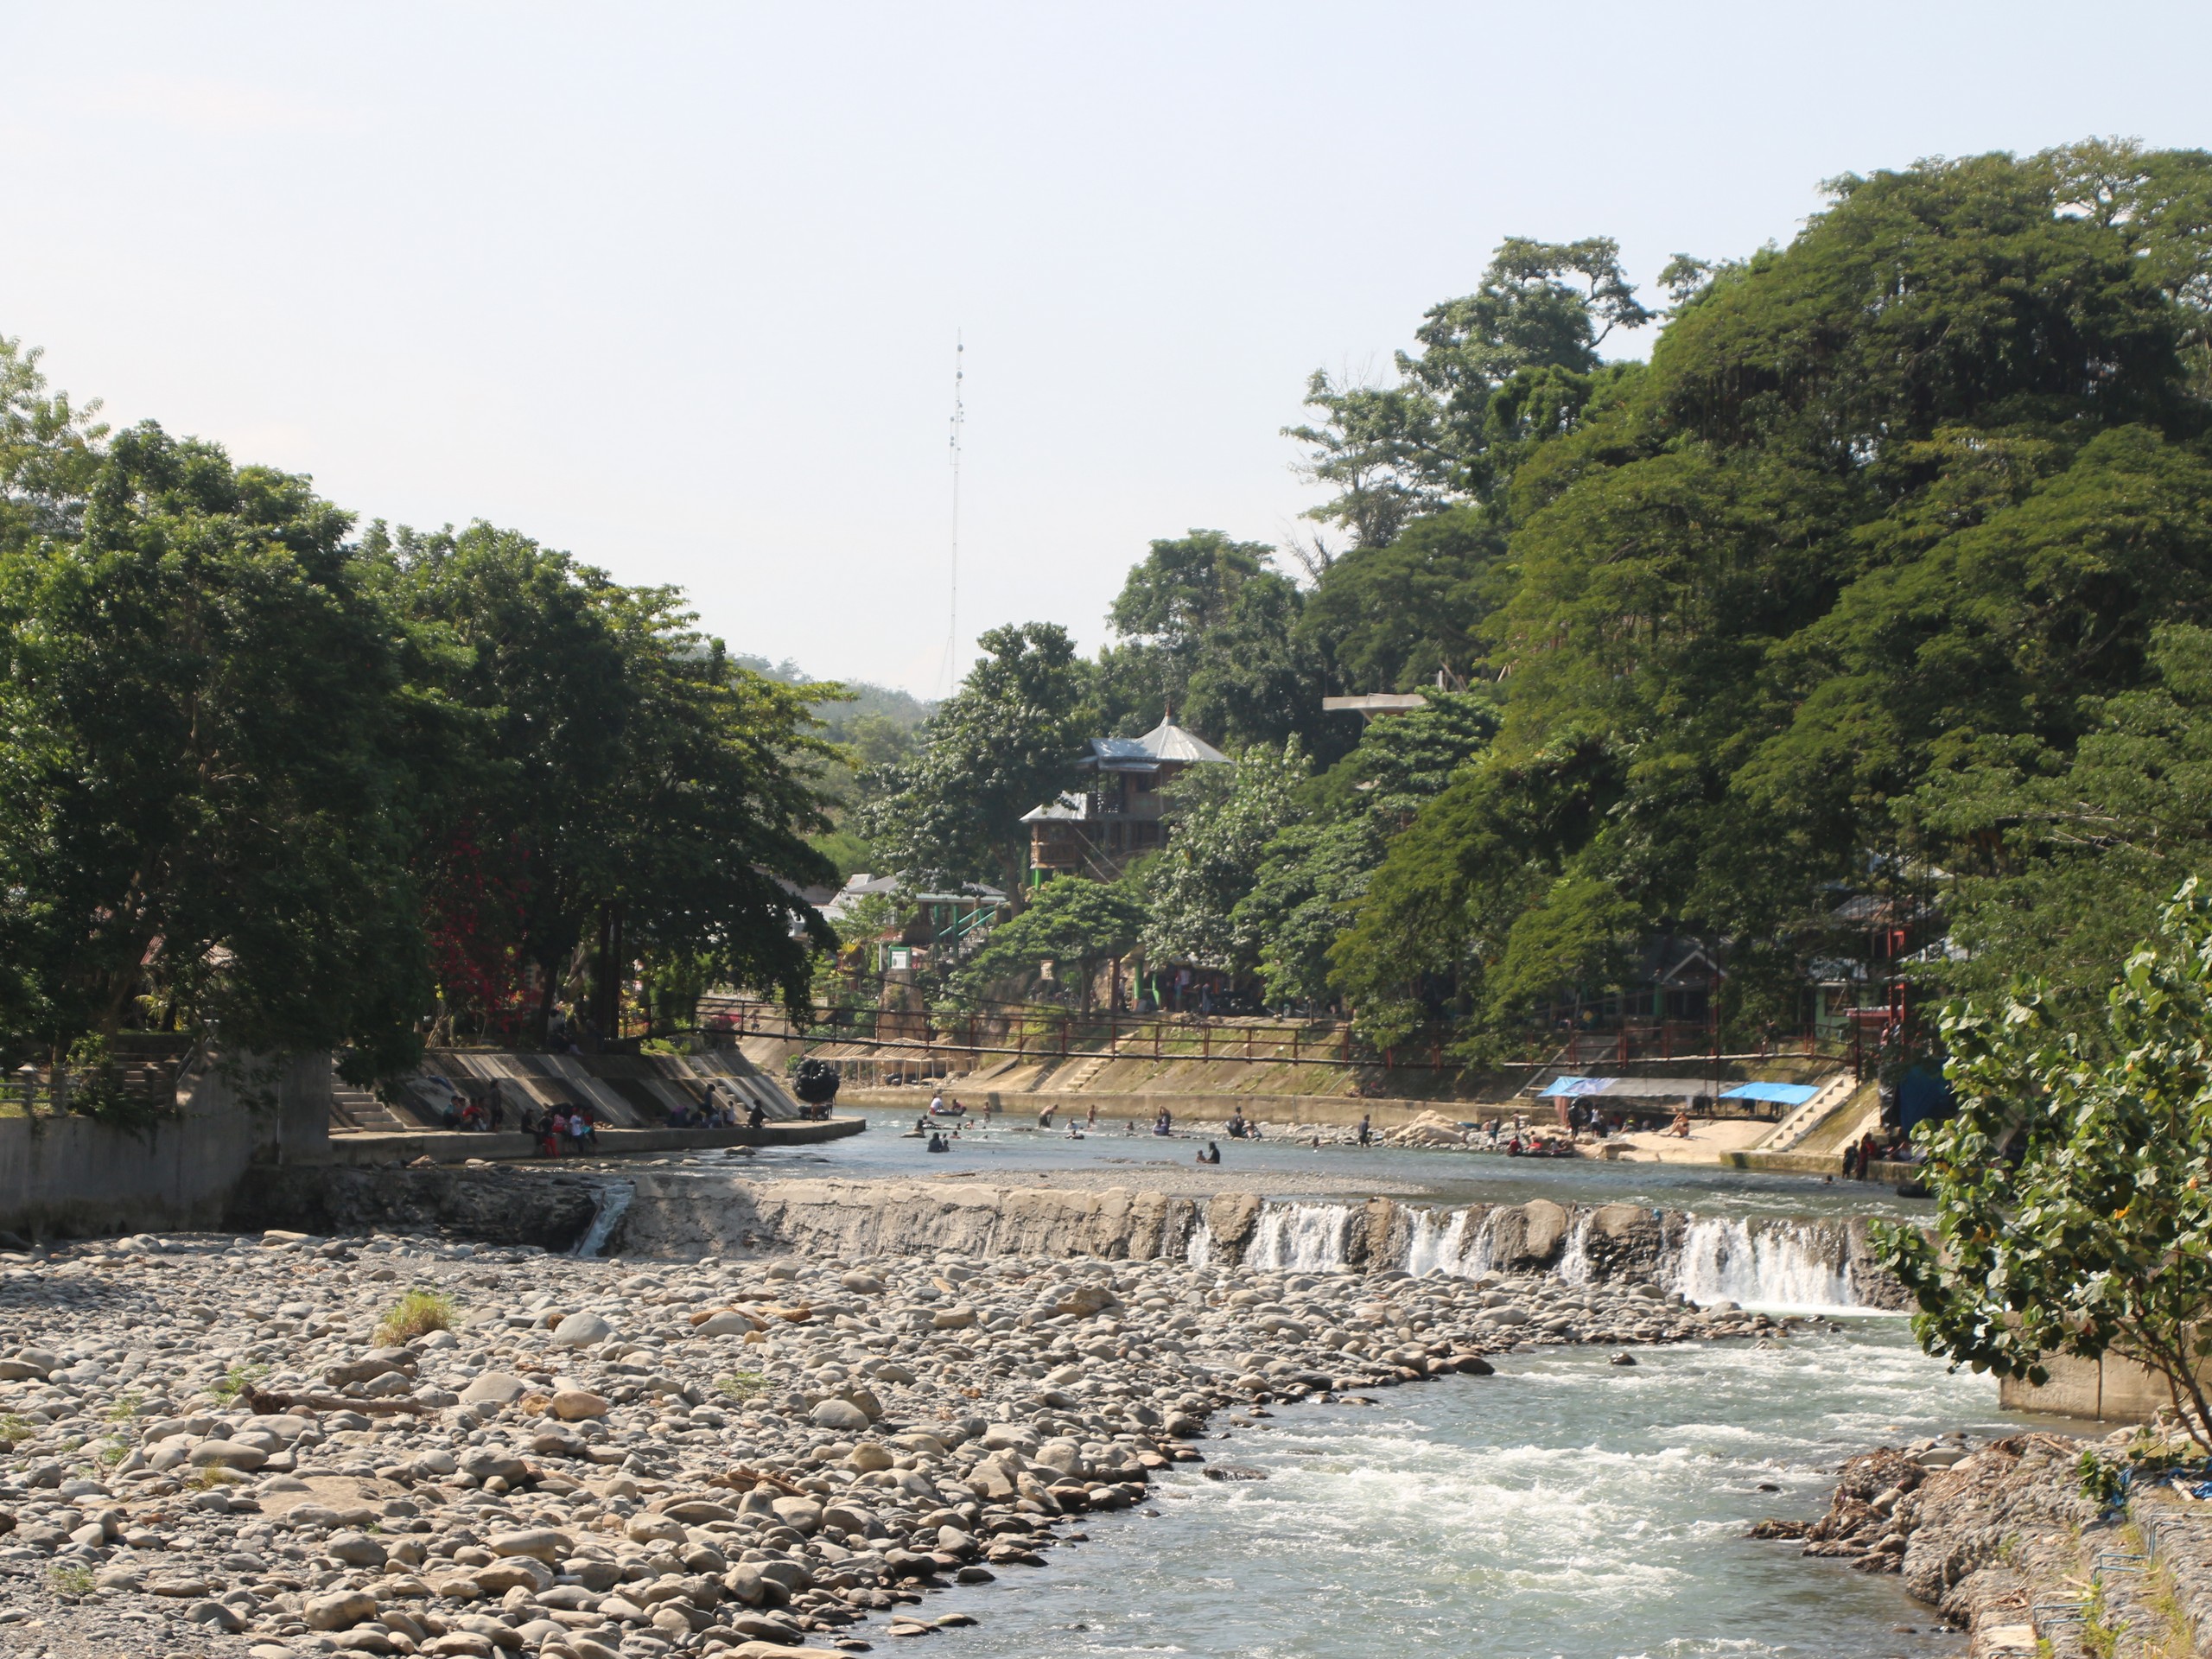 Sumatra - Bohorok River